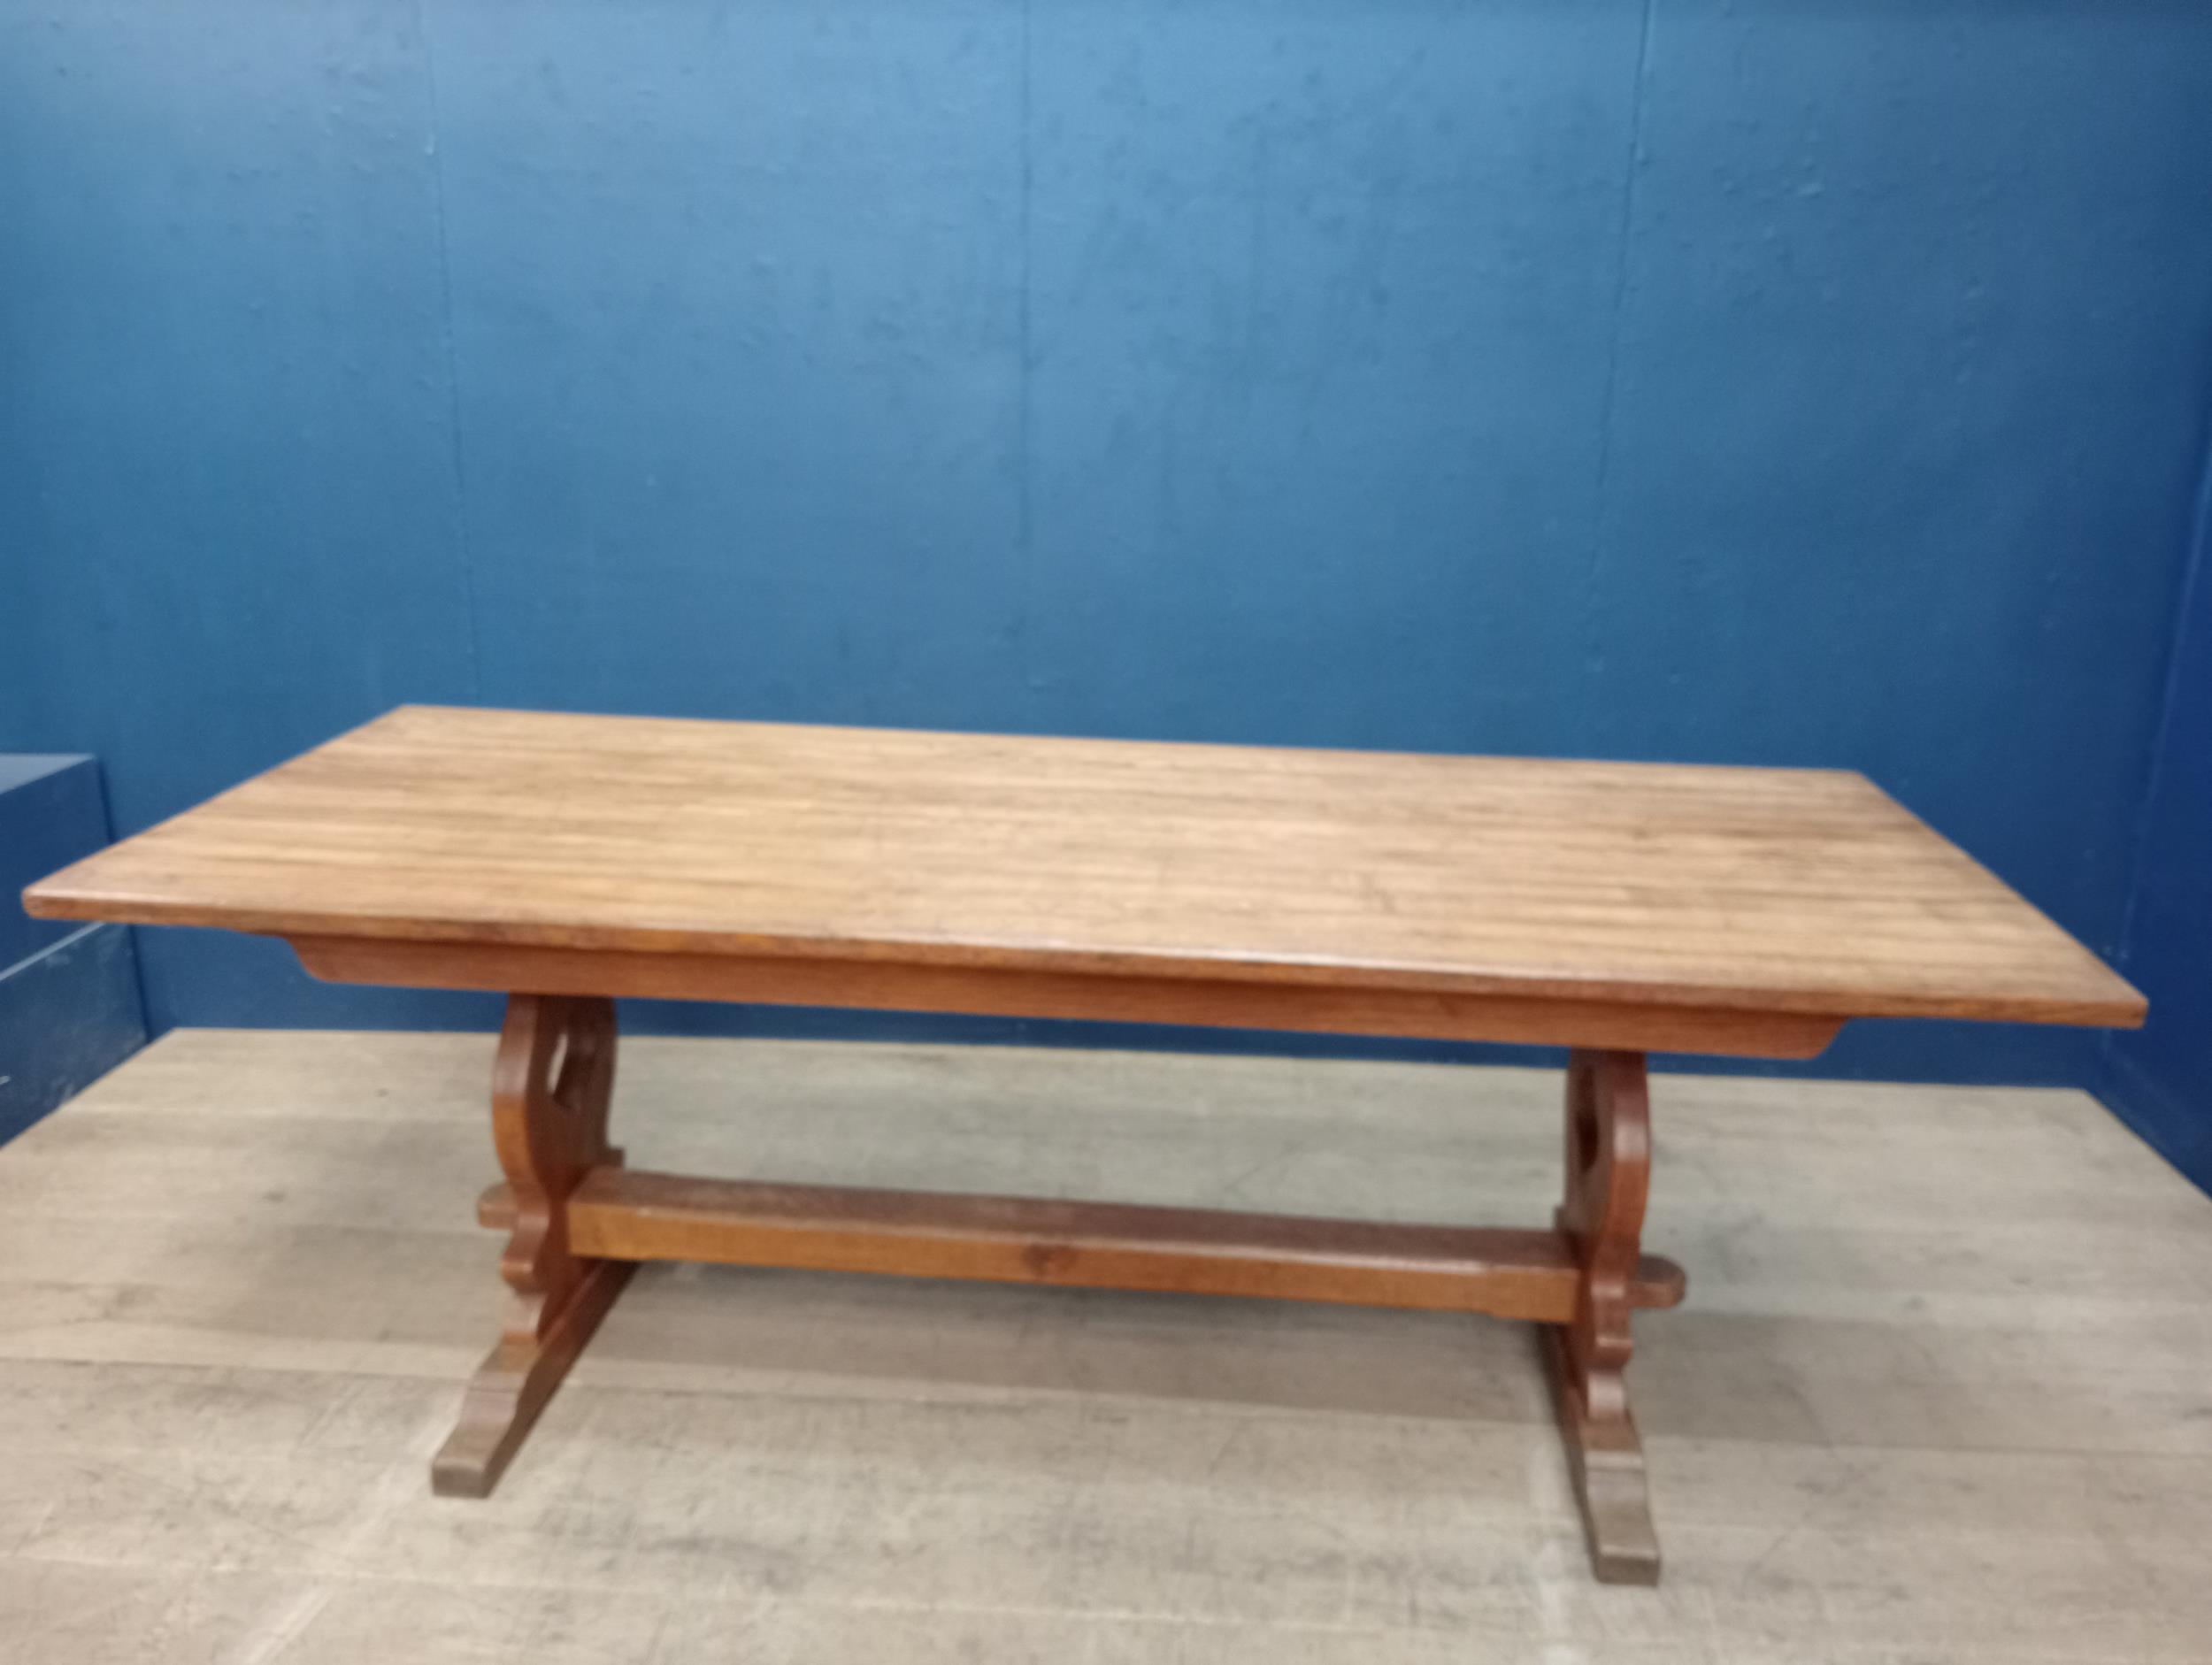 Large oak refectory table {H 75cm x W 212cm x D 87cm}.